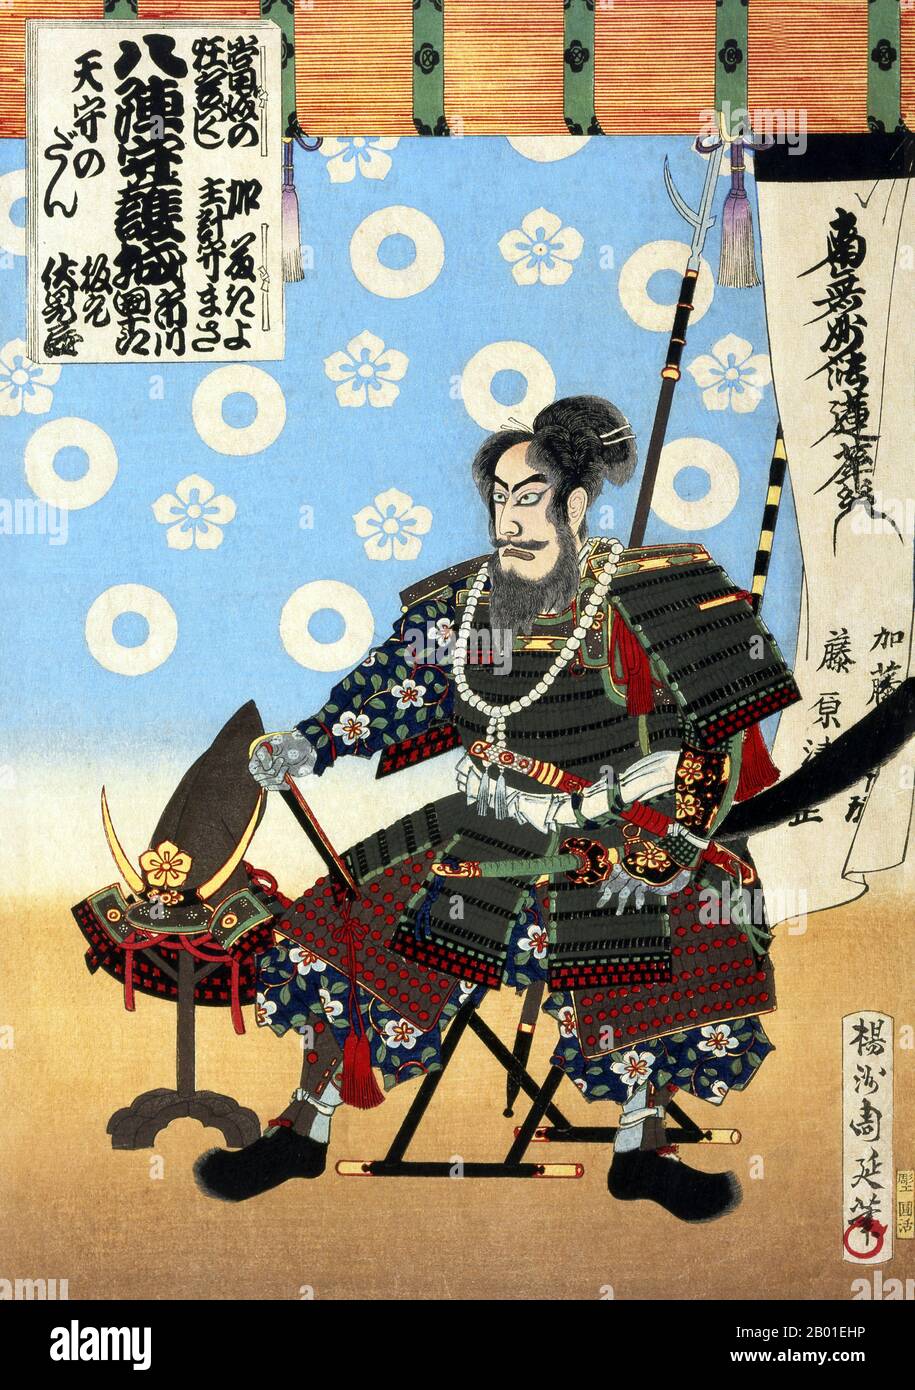 Japon : le guerrier Kato Kiyomasa (1562-1611). Imprimé en blocs de bois Ukiyo-e de Yoshu Chikanobu (1838-1912), 1886. L'empoisonnement présumé du grand guerrier Kato Kiyomasa a fait l'objet d'une pièce de kabuki créée en 1807, mais en raison de la censure gouvernementale à l'époque, le nom du personnage principal a été changé en Sato Masakiyo. Toyohara Chikanobu, mieux connu de ses contemporains comme Yōshū Chikanobu, était un artiste prolifique de blocs de bois de la période Meiji au Japon. Ses œuvres capturent la transition de l'âge des samouraïs à la modernité Meiji. Banque D'Images